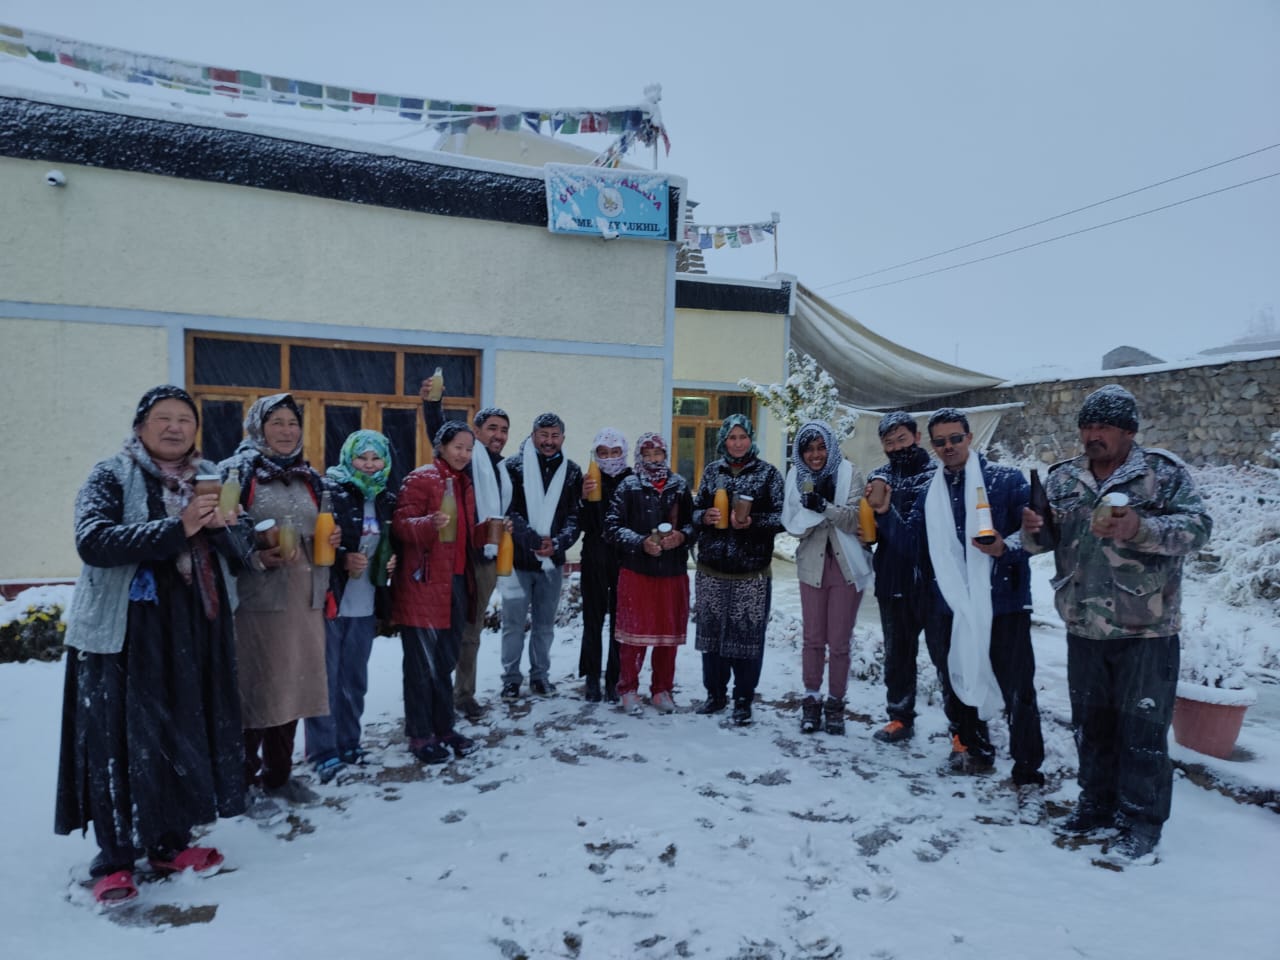 Produk Jimpo dicintai masyarakat Ladakh karena keasliannya